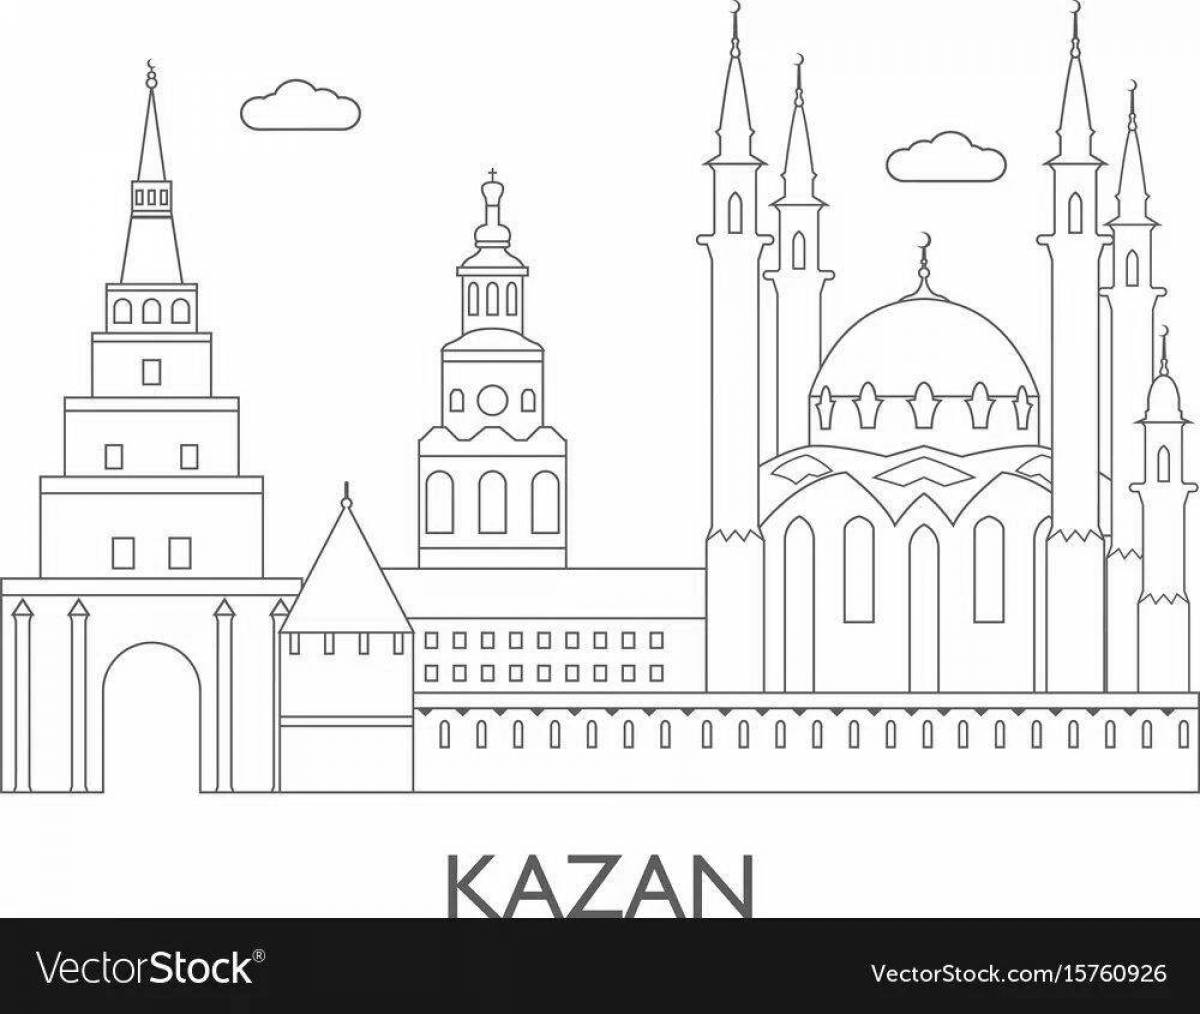 Colorful Kazan aba center coloring book